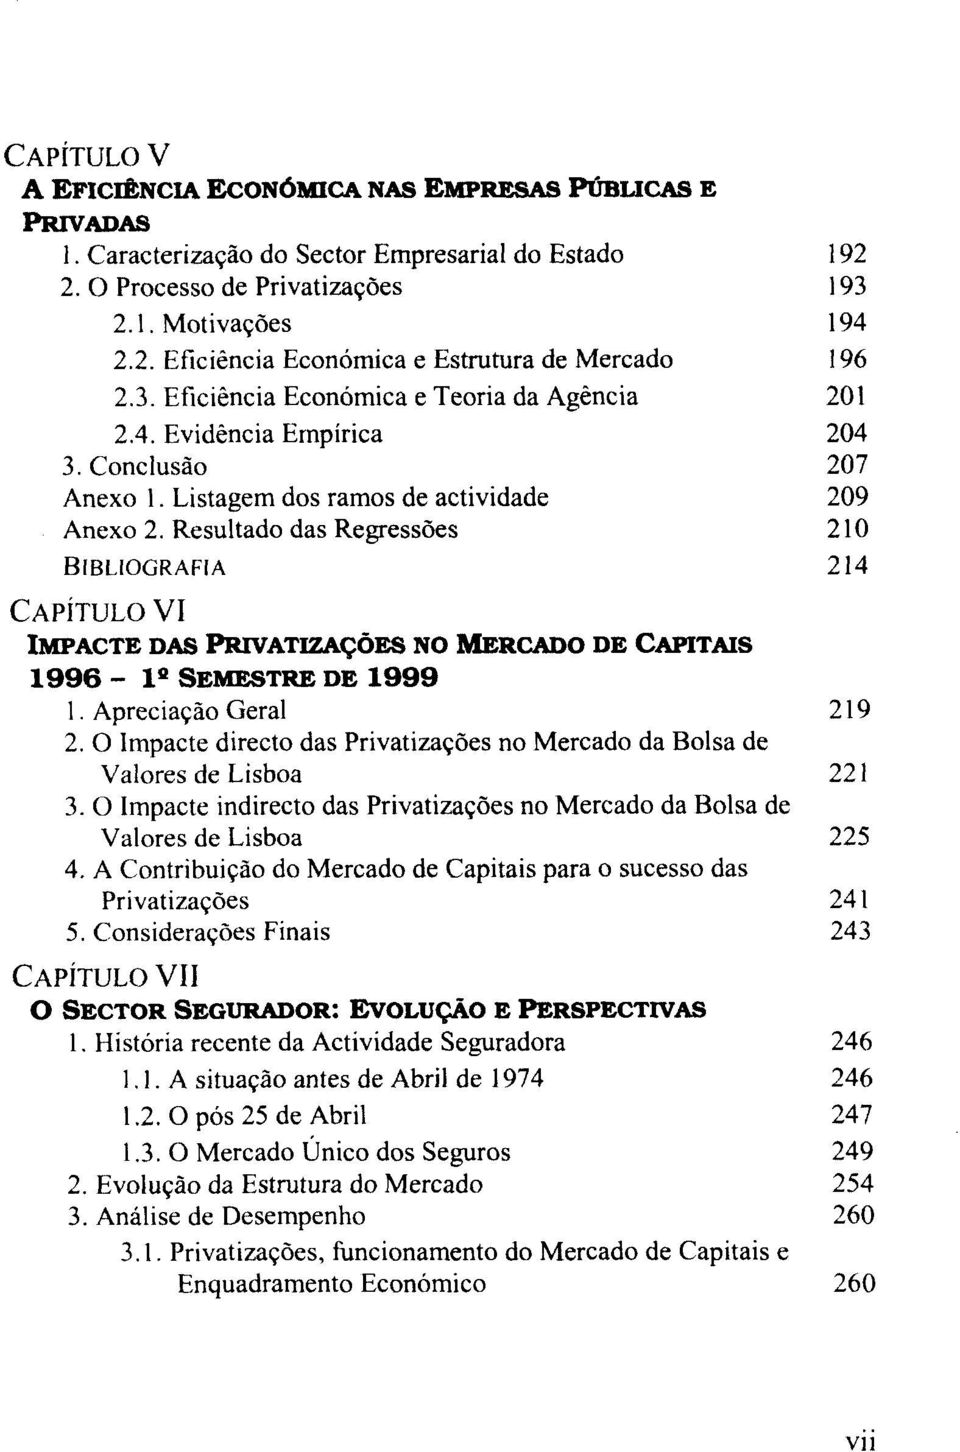 Resultado das Regressões BIBLIOGRAFIA CAPITULO VI IMPACTE DAS PRIVATIZAÇÕES NO MERCADO DE CAPITAIS 1996-1' SEMESTRE DE 1999 1. Apreciação Geral 2.